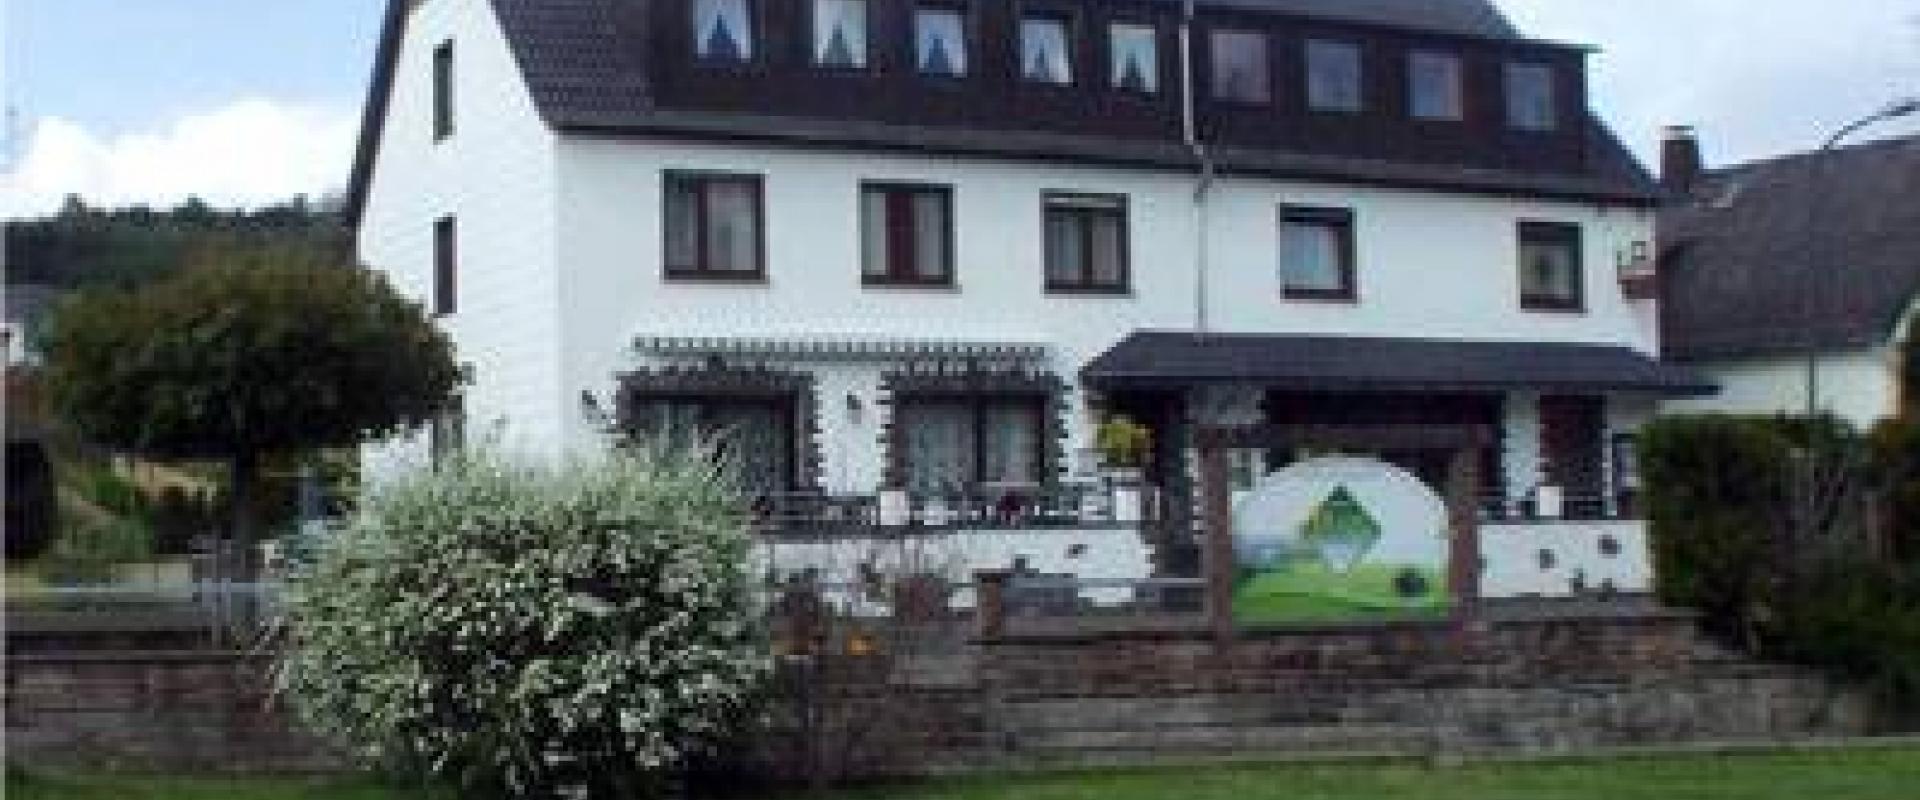 14509 Biker Hotel Möschelberg in der Eifel.jpg